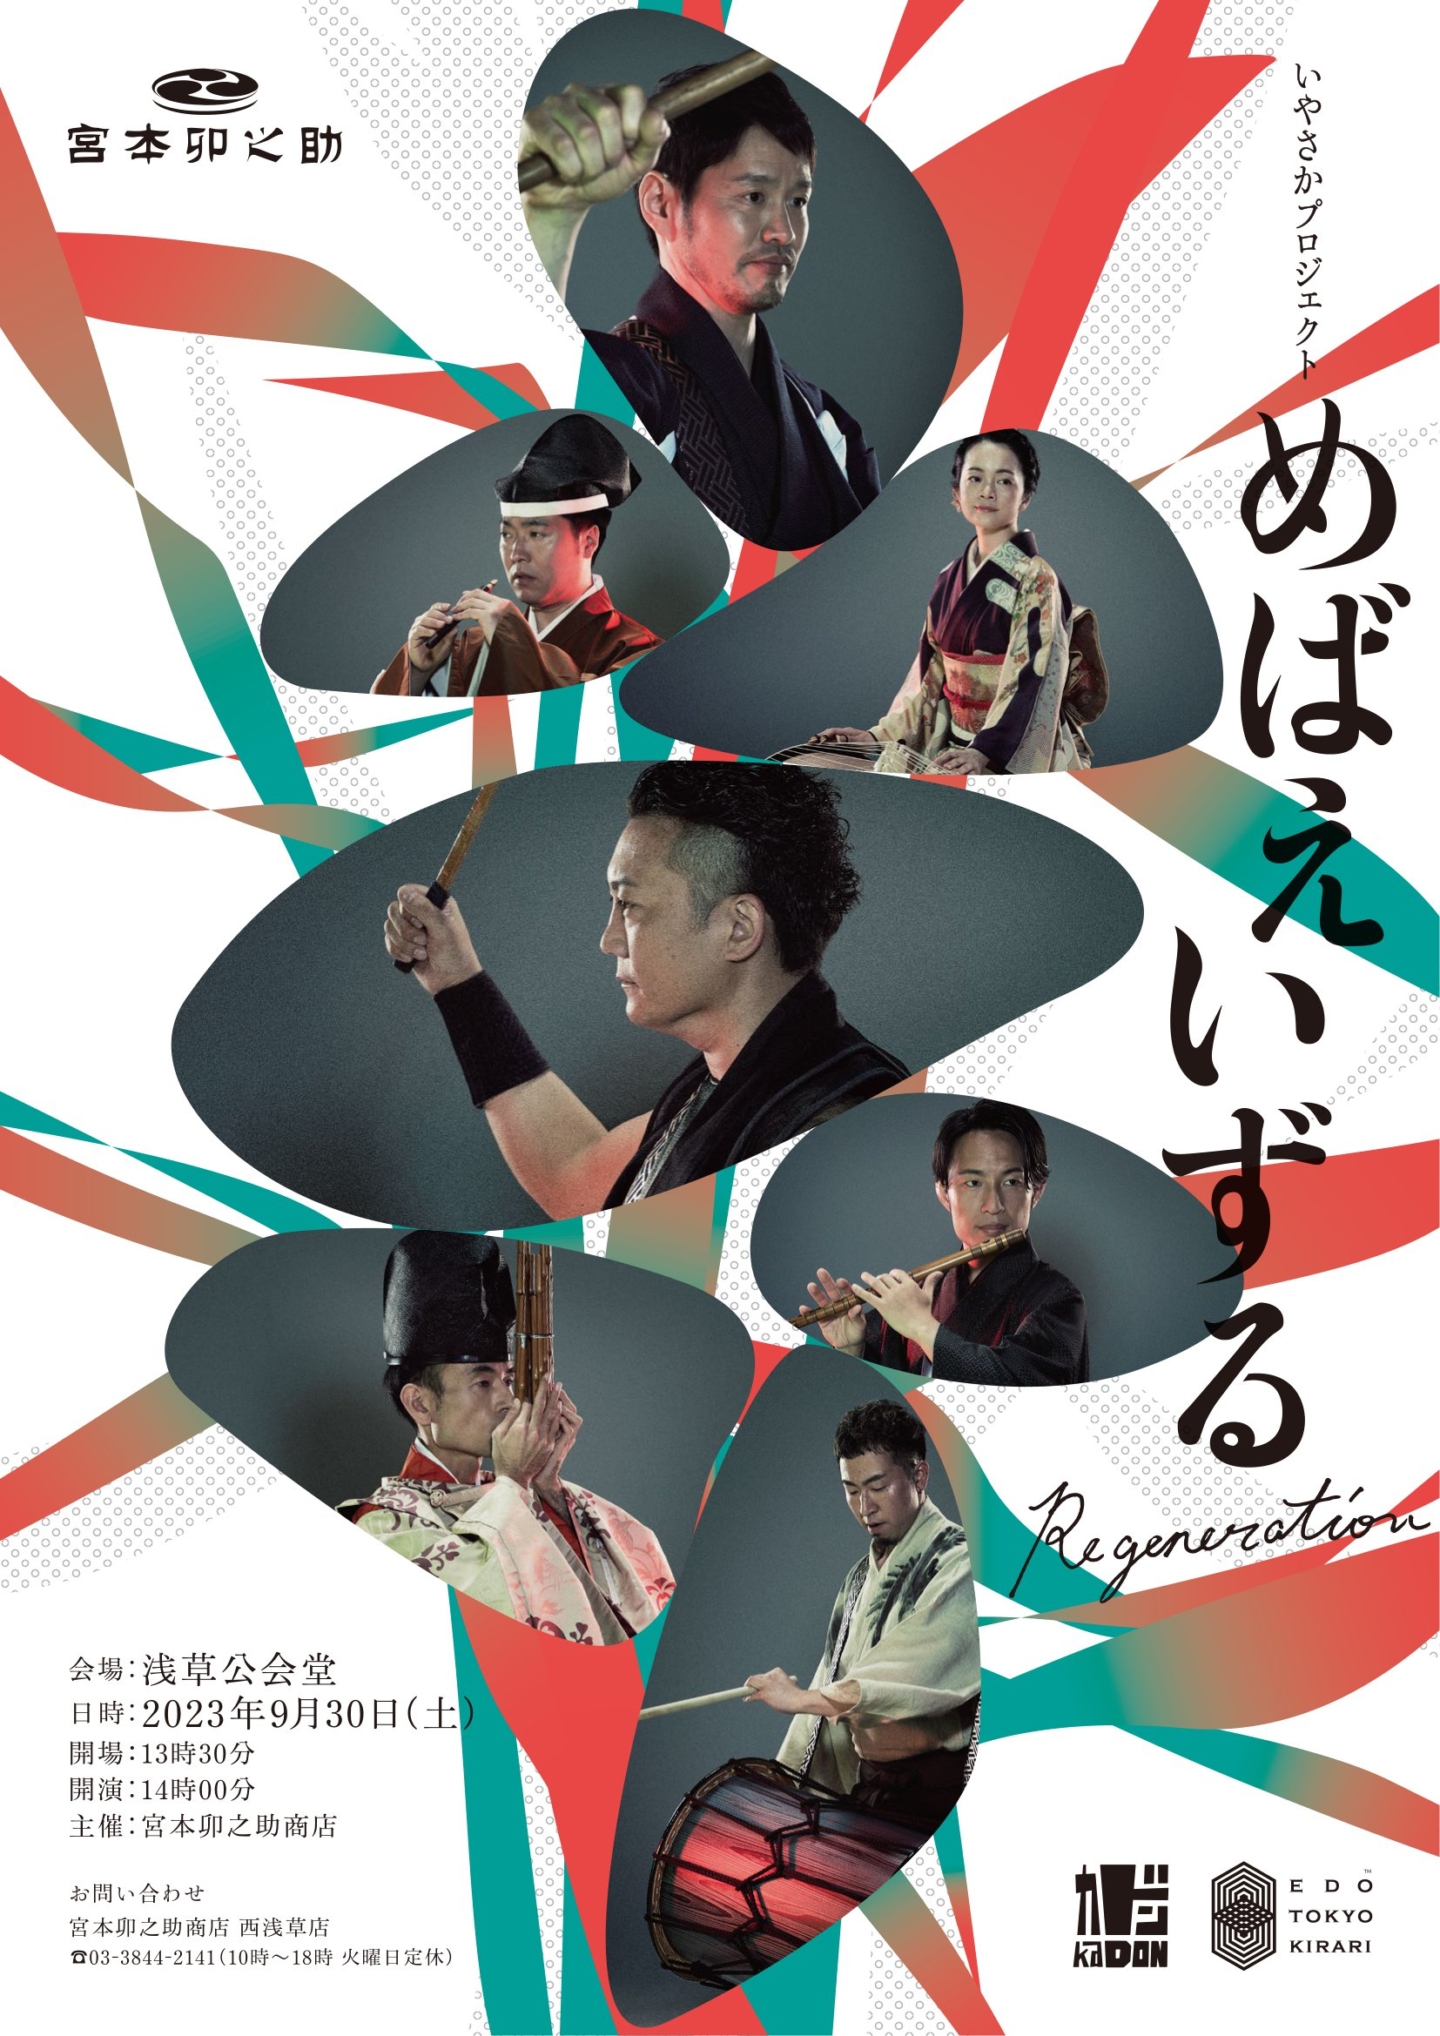 [Miyamoto Unosuke Shôten ]Un concert donné par un ensemble de joueurs d’instruments de musique japonais variés. Venez écouter des tonalités à la fois originales et nostalgiques.